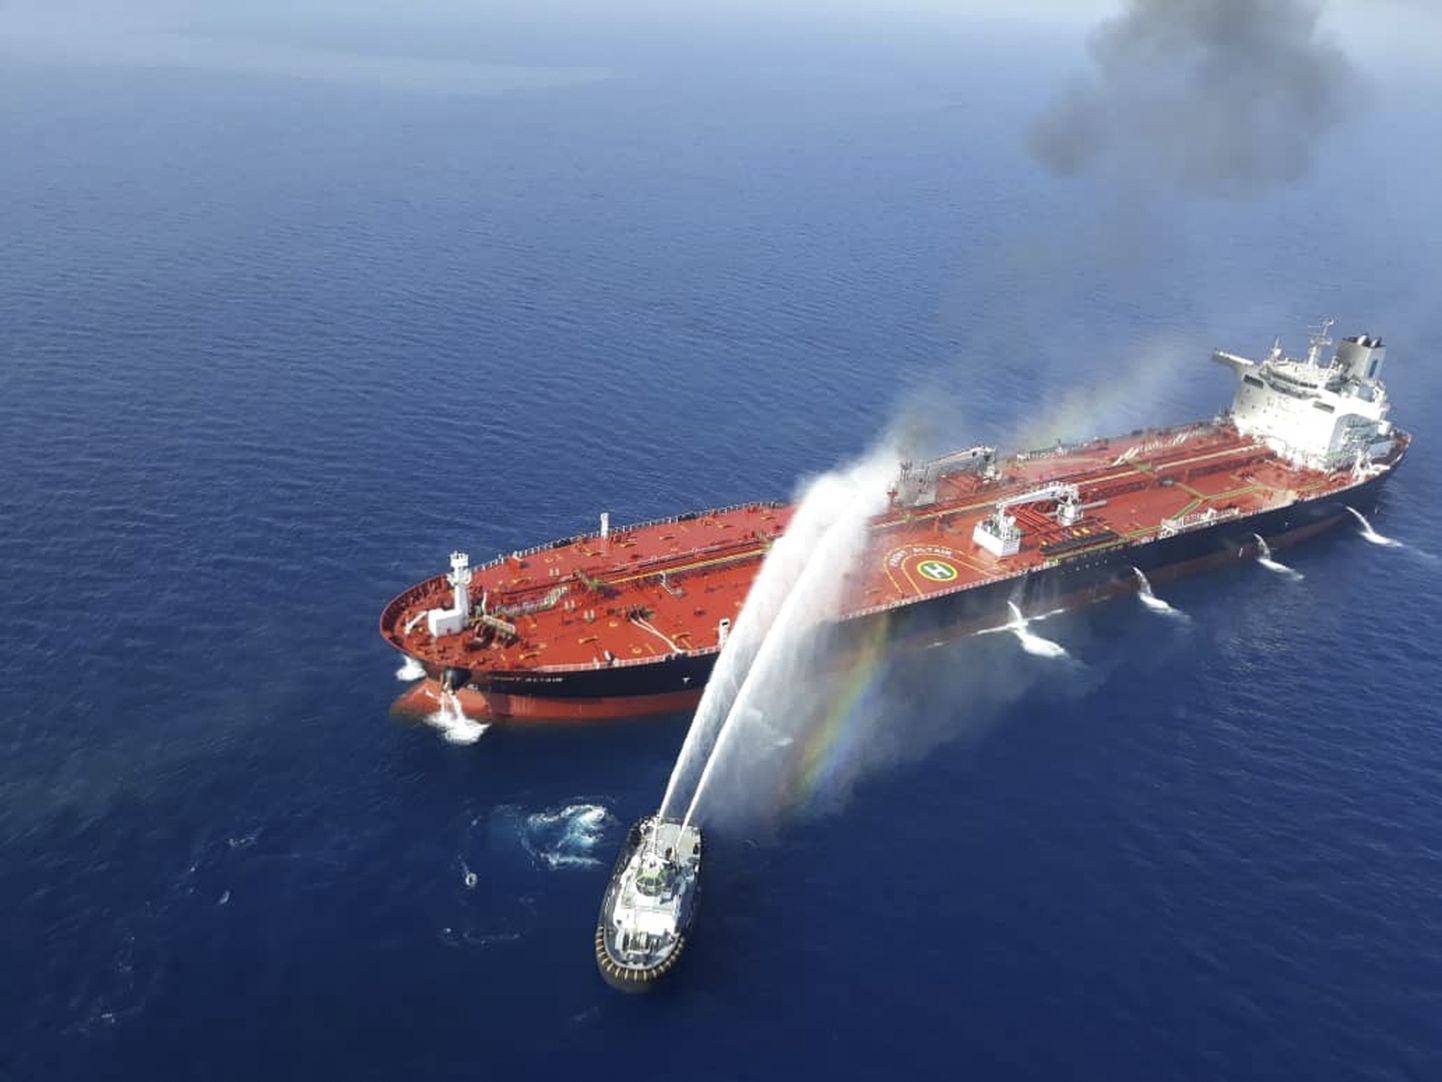 Iraani mereväealus kustutamas põlengut tankeril.